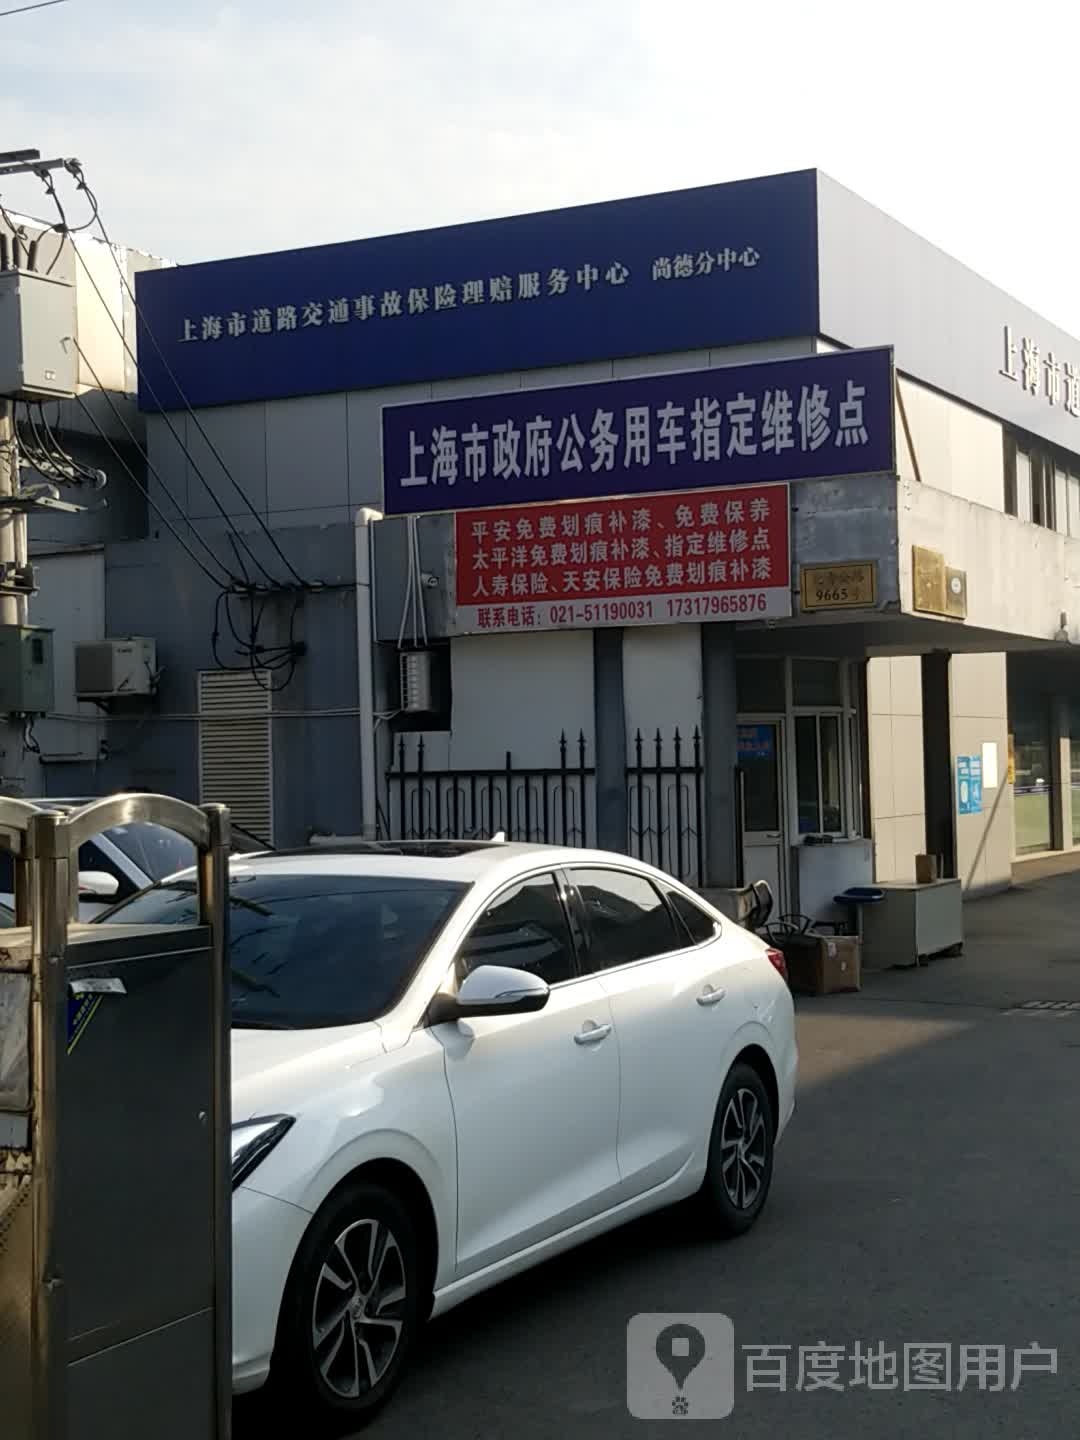 上海市政府公务用车指定维修点